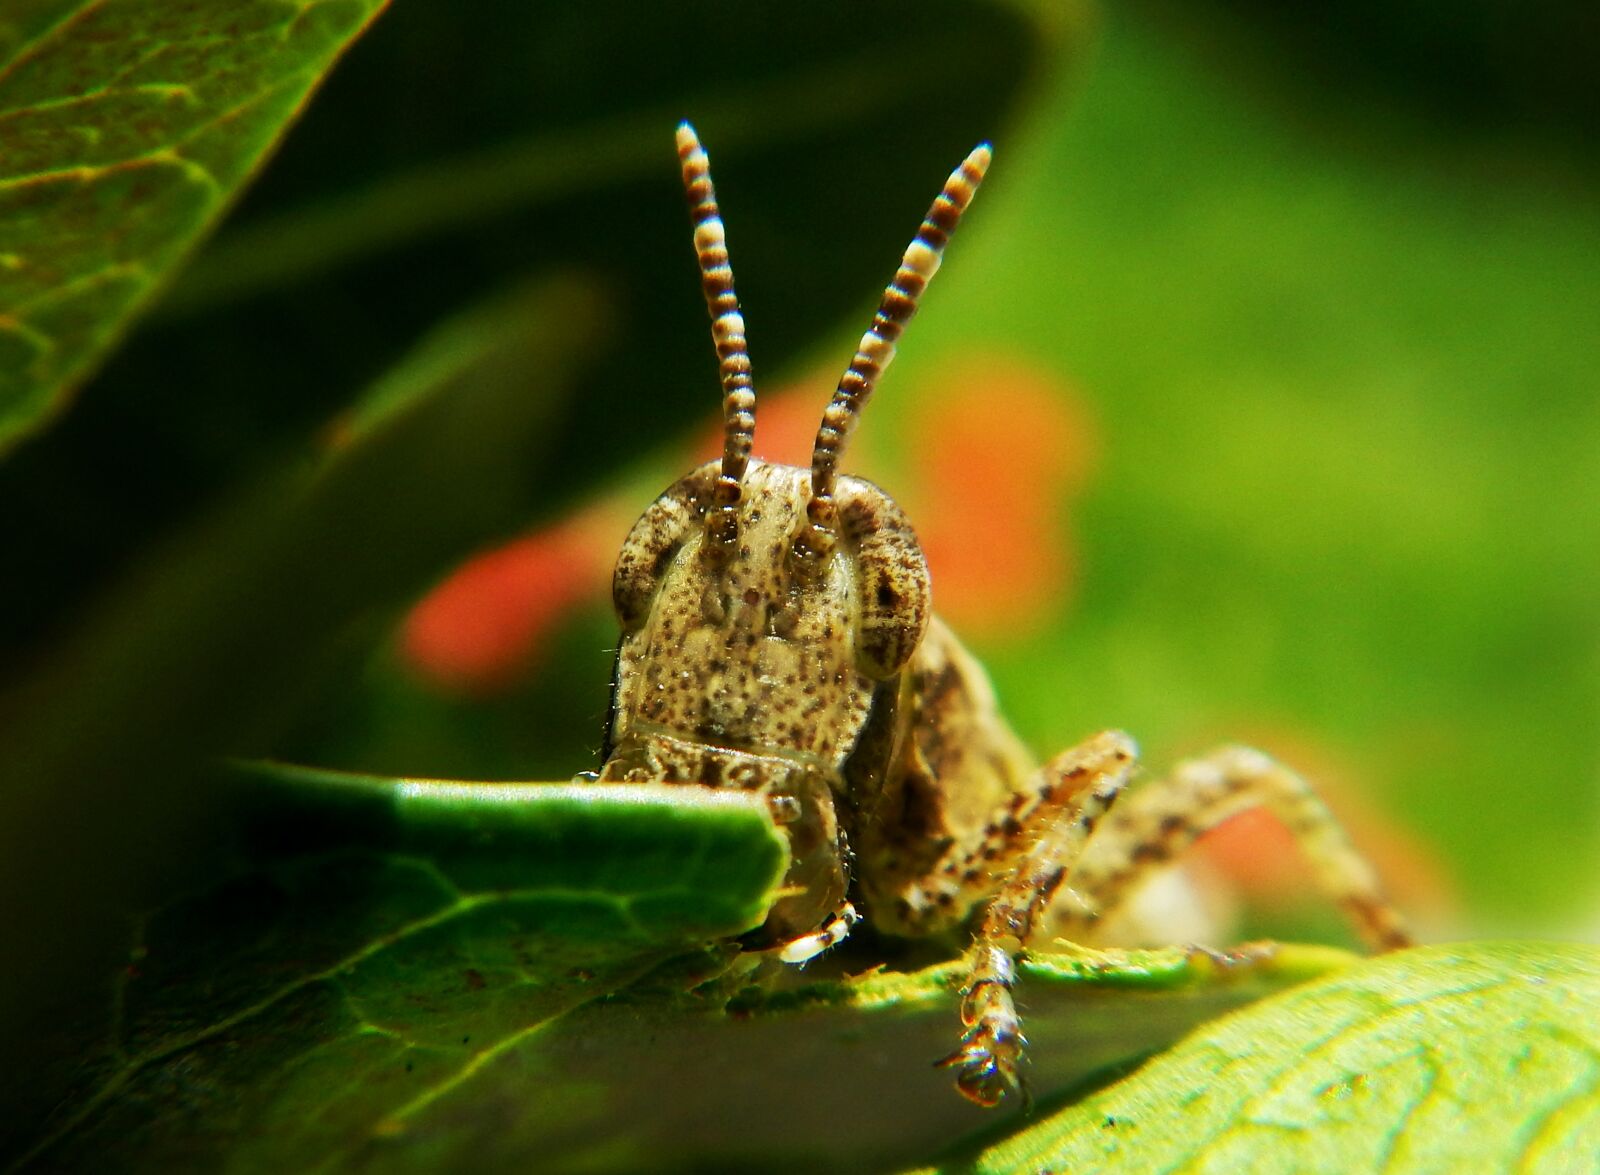 Nikon Coolpix AW110 sample photo. Grasshopper, insect, garden photography